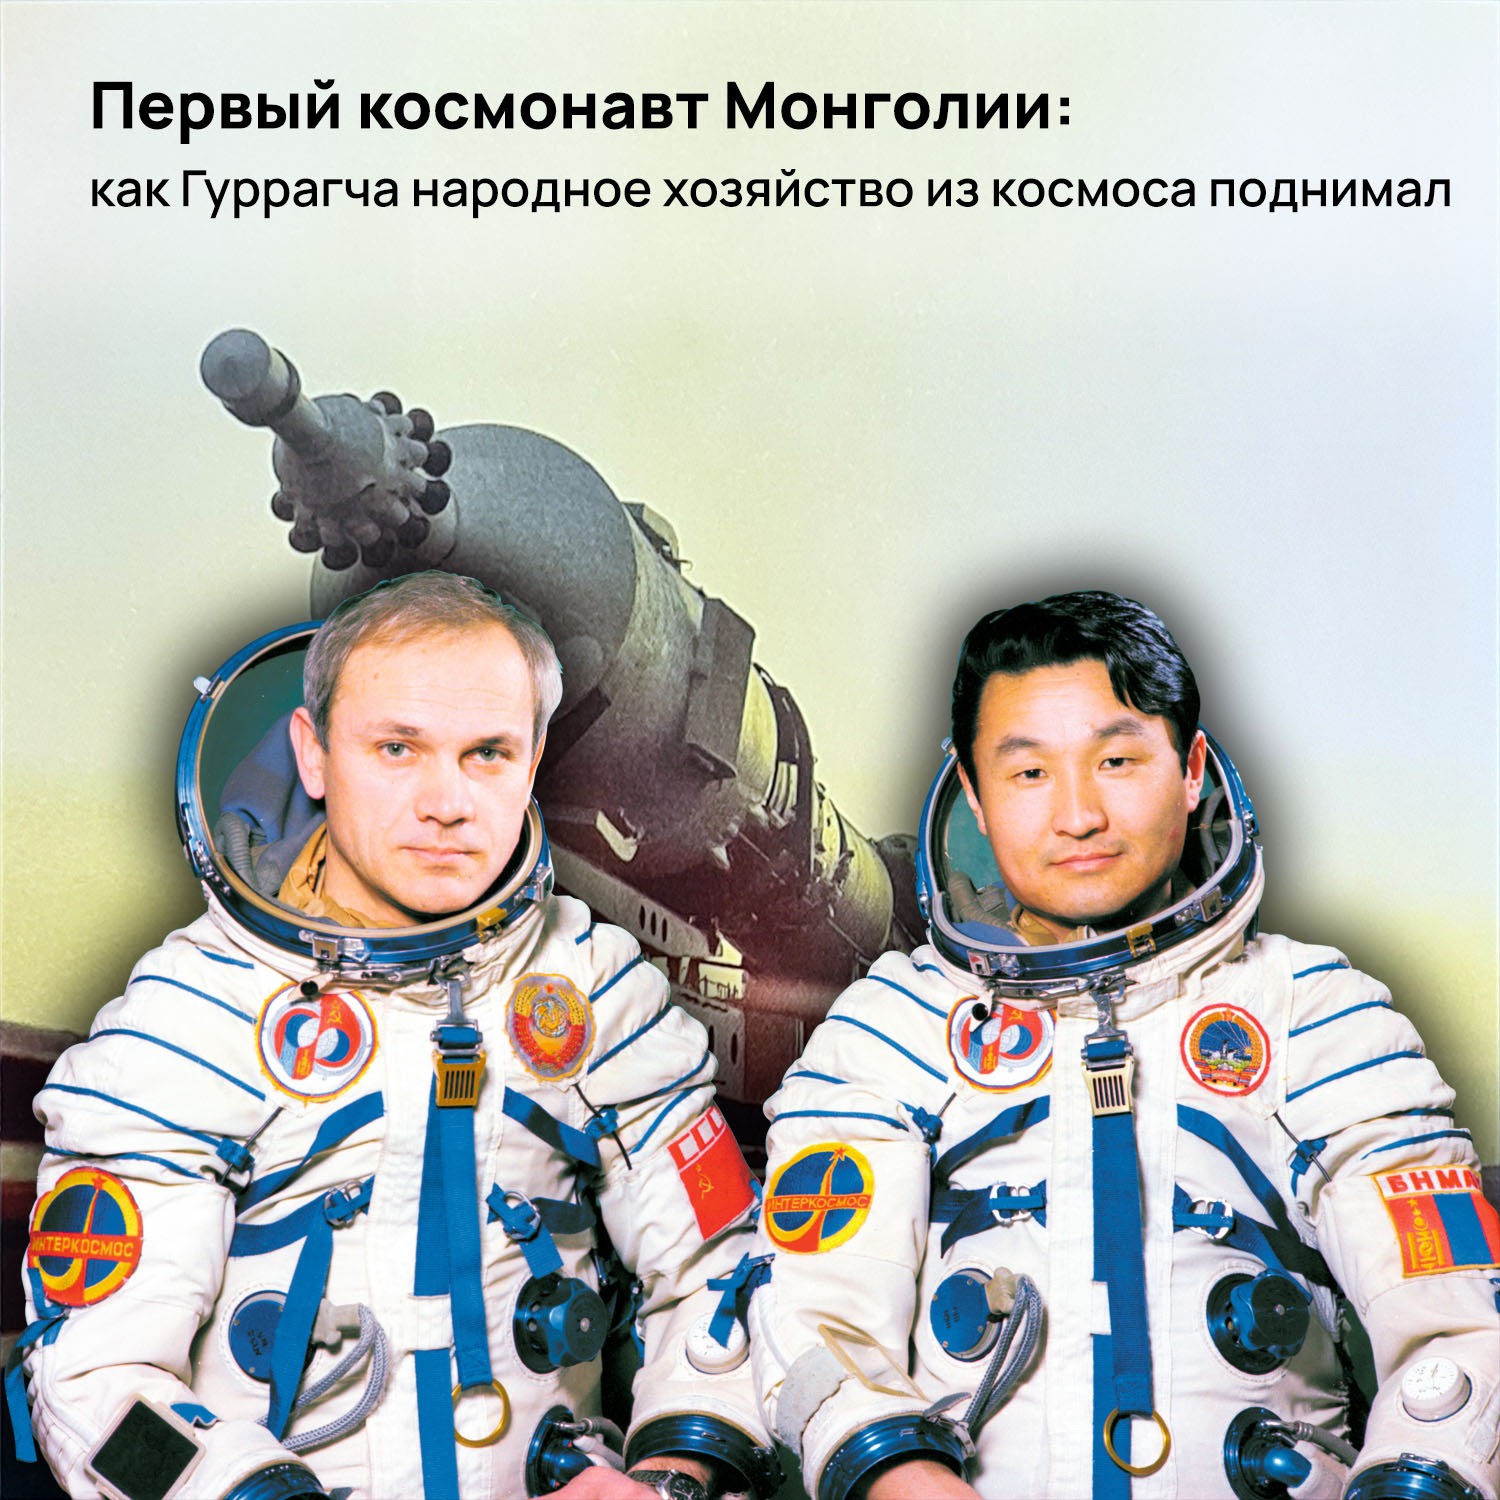 1 Монгольский космонавт